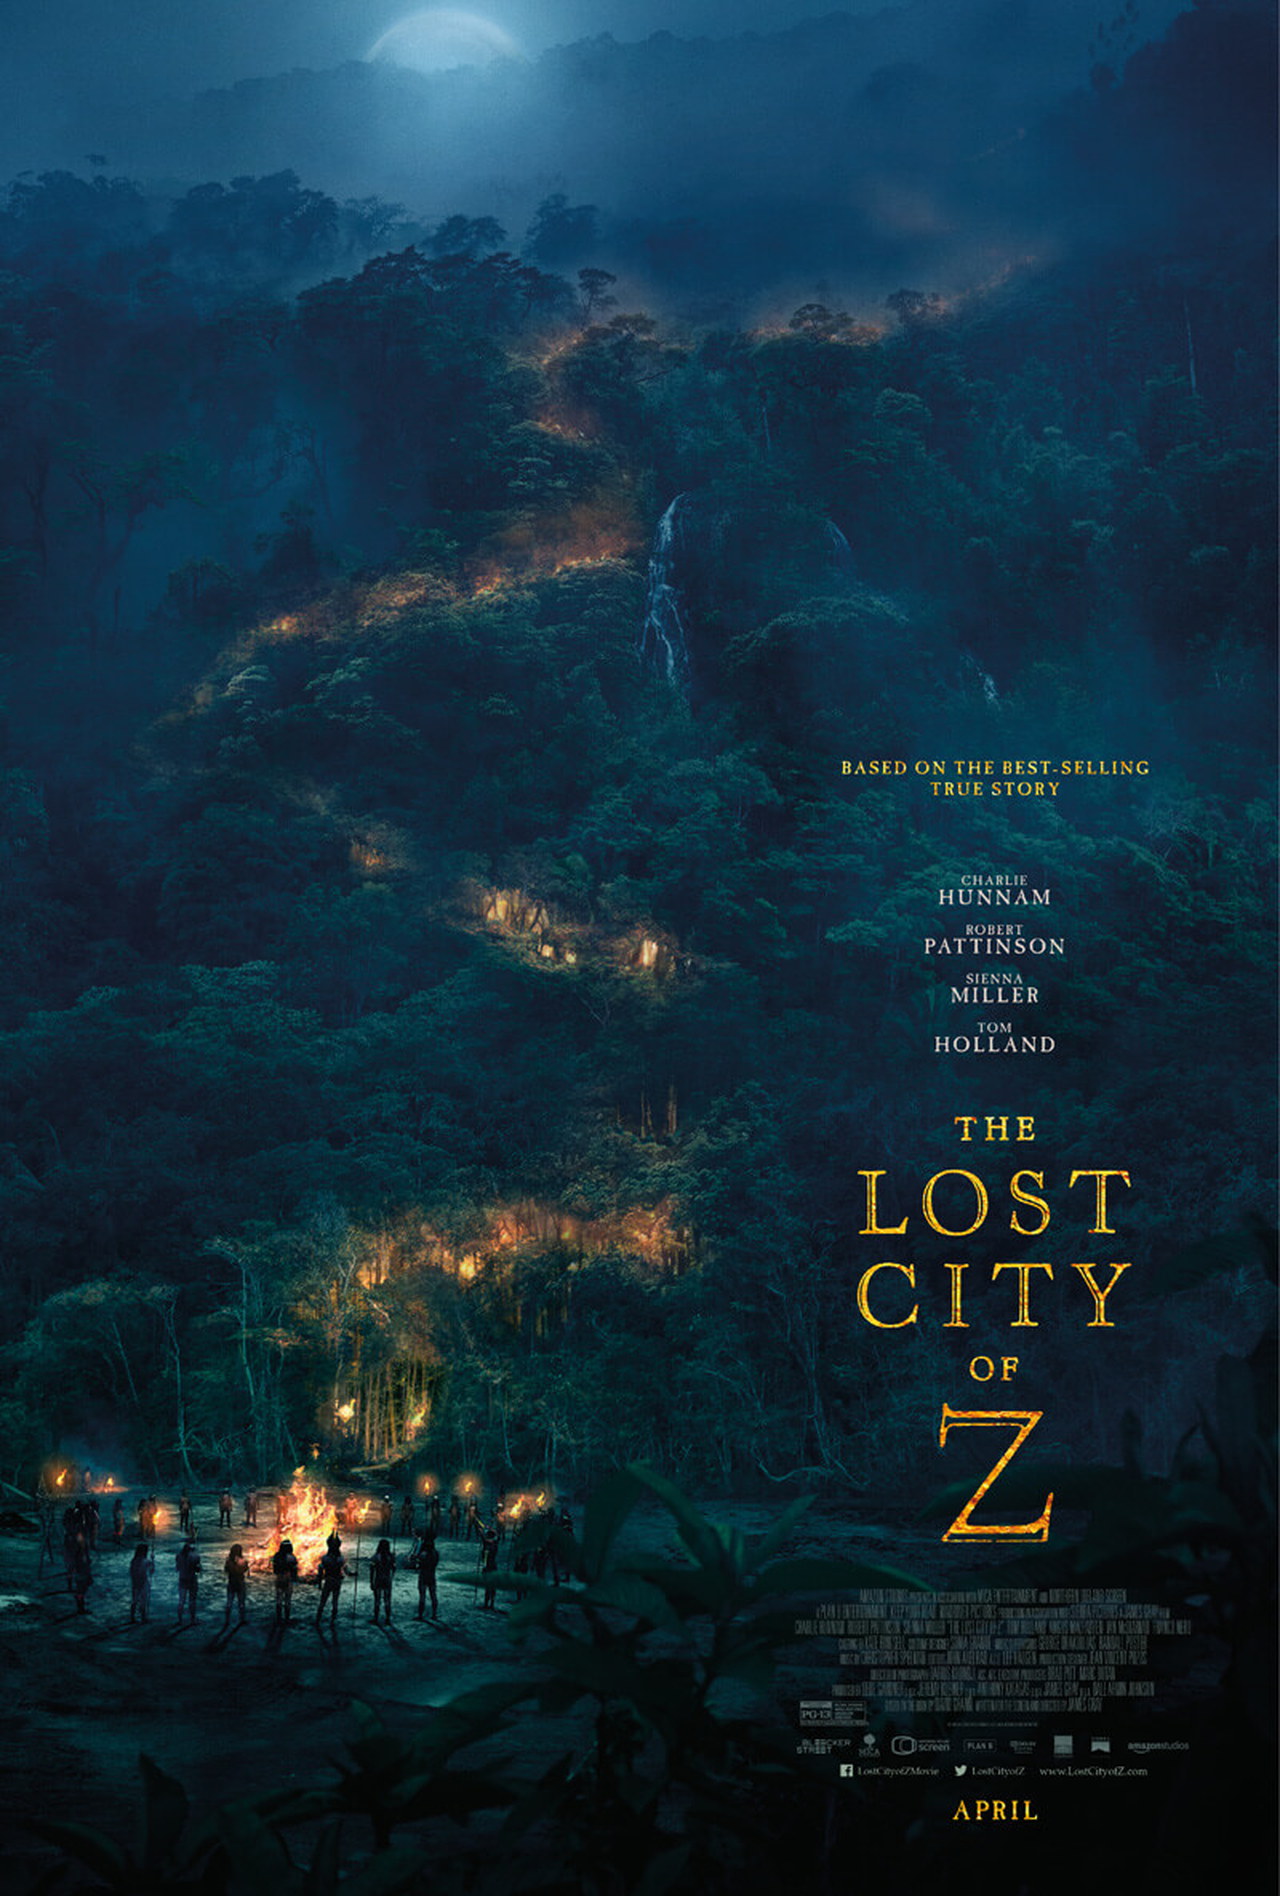 The Lost City of Z nuovo trailer e poster del film con Charlie Hunnam